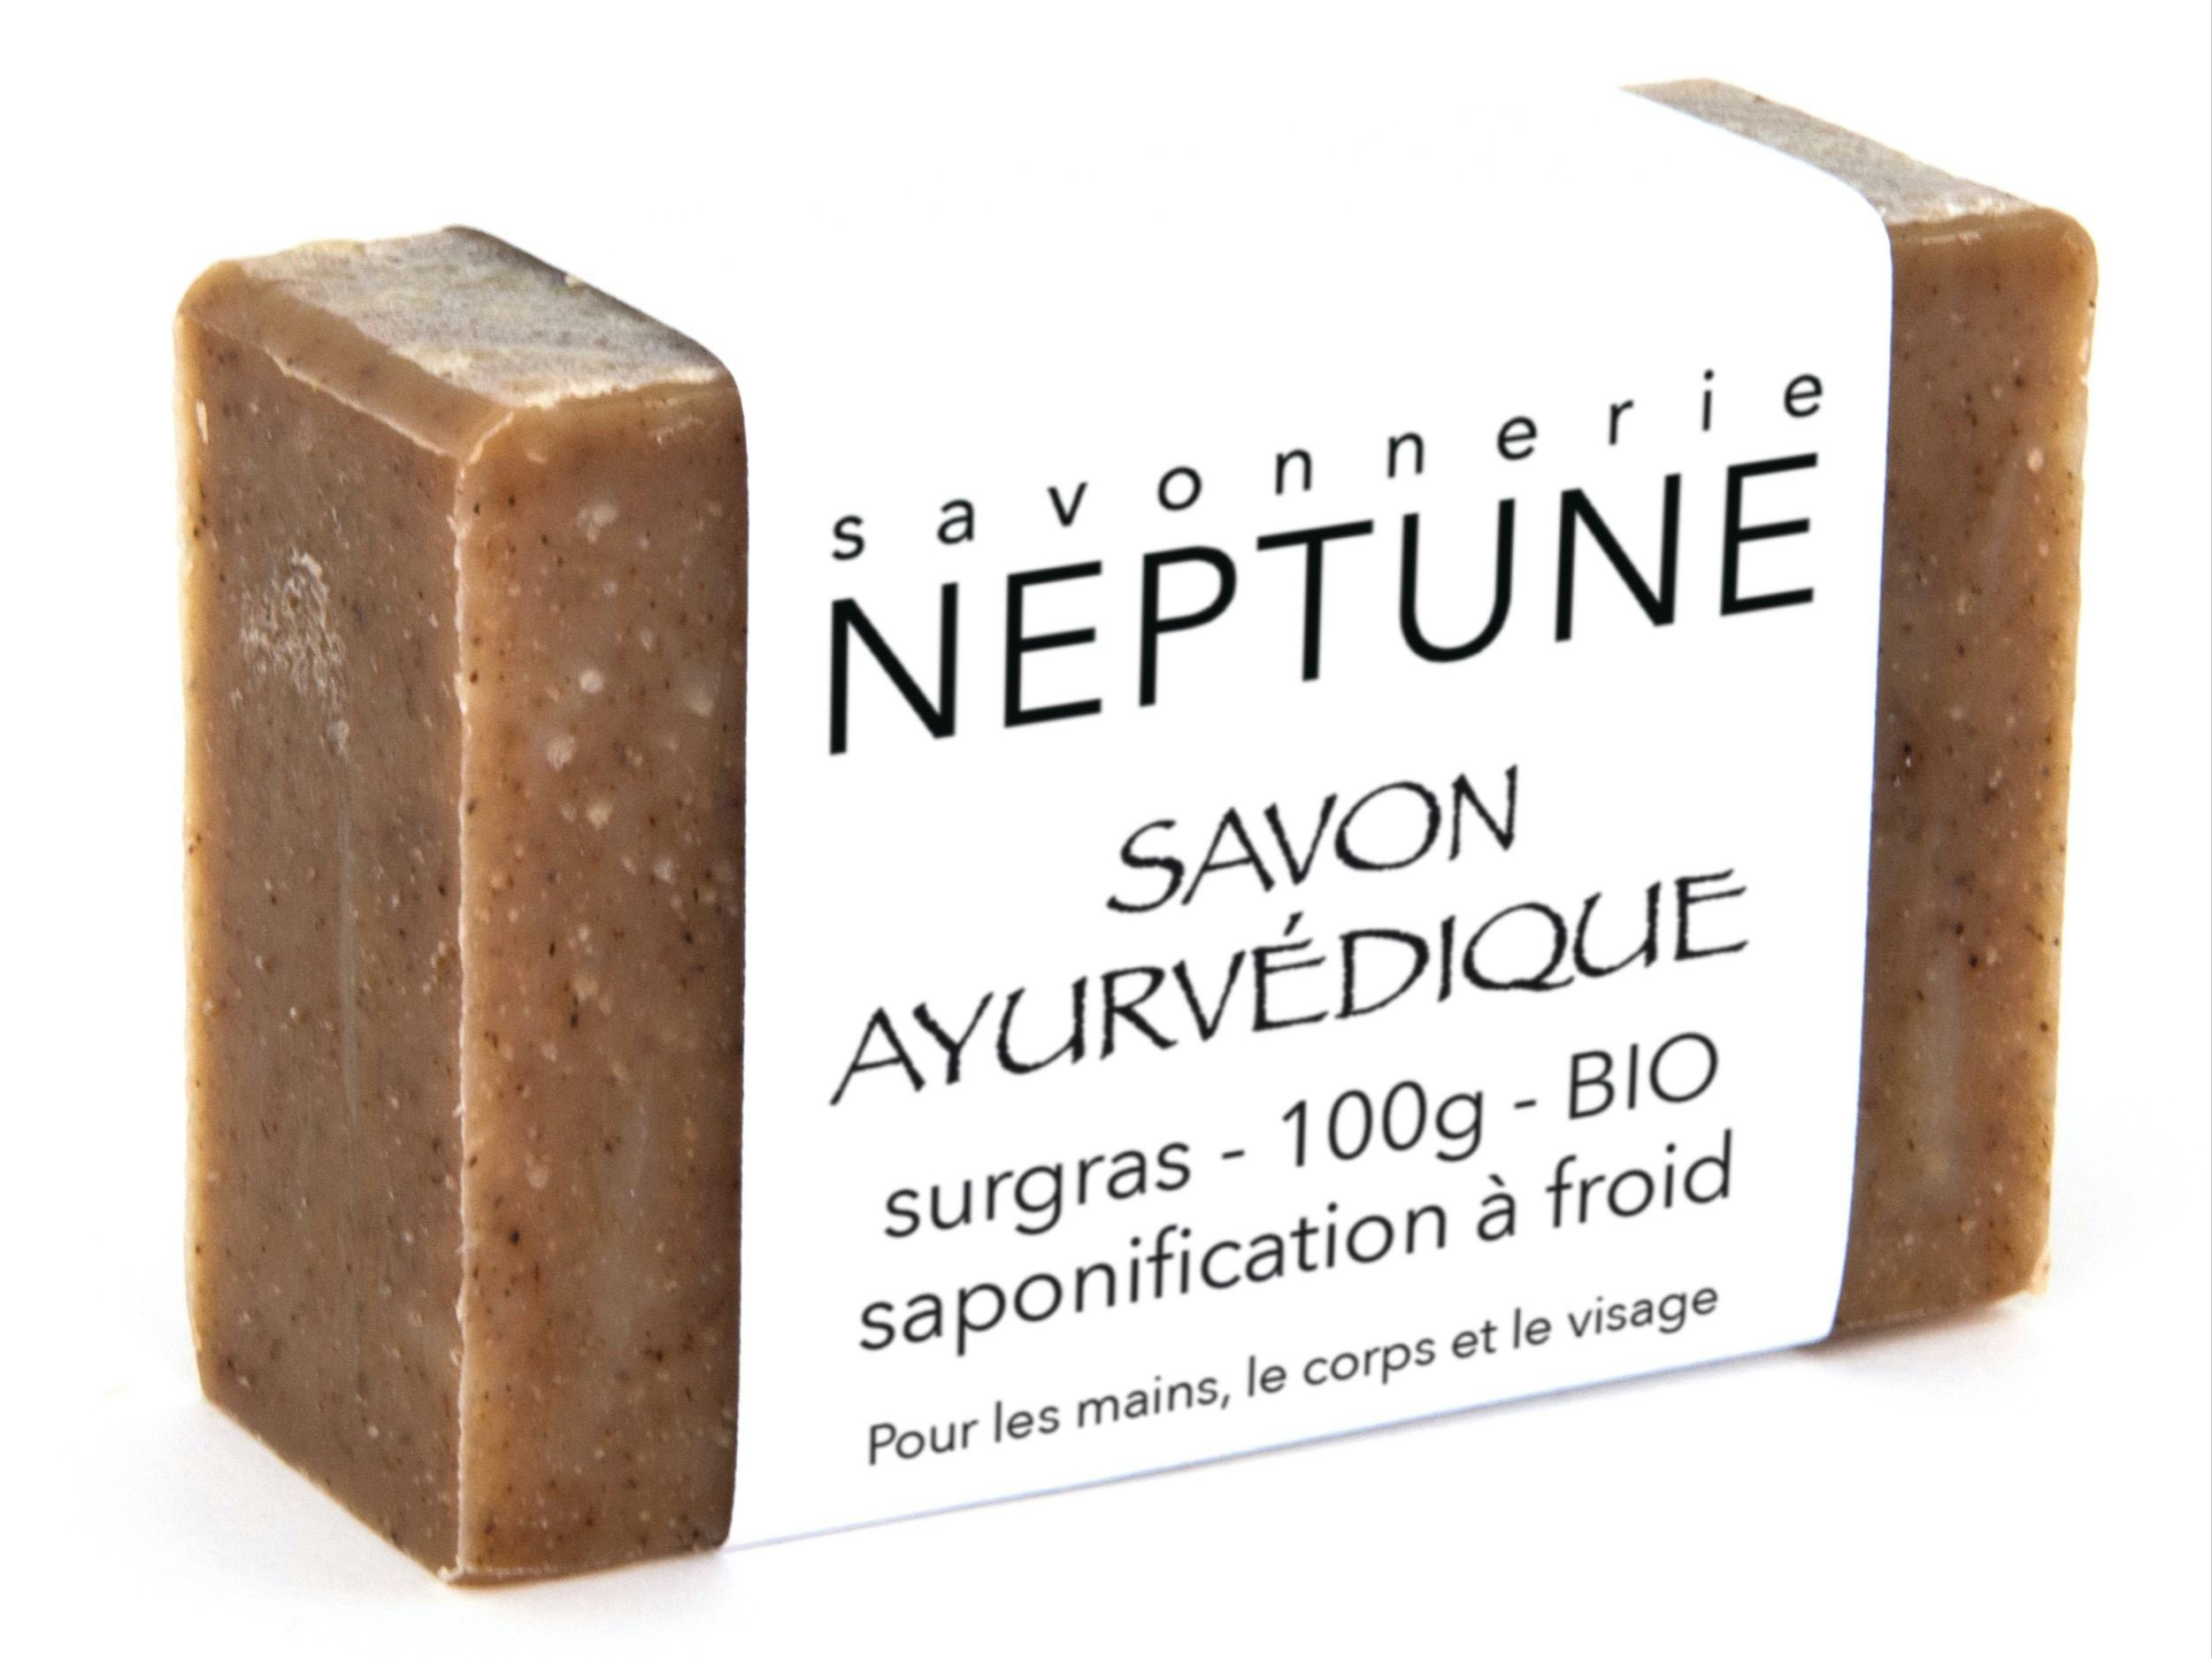 Savon ayurvédique - bio, prodotto artigianale per la vendita diretta in Svizzera